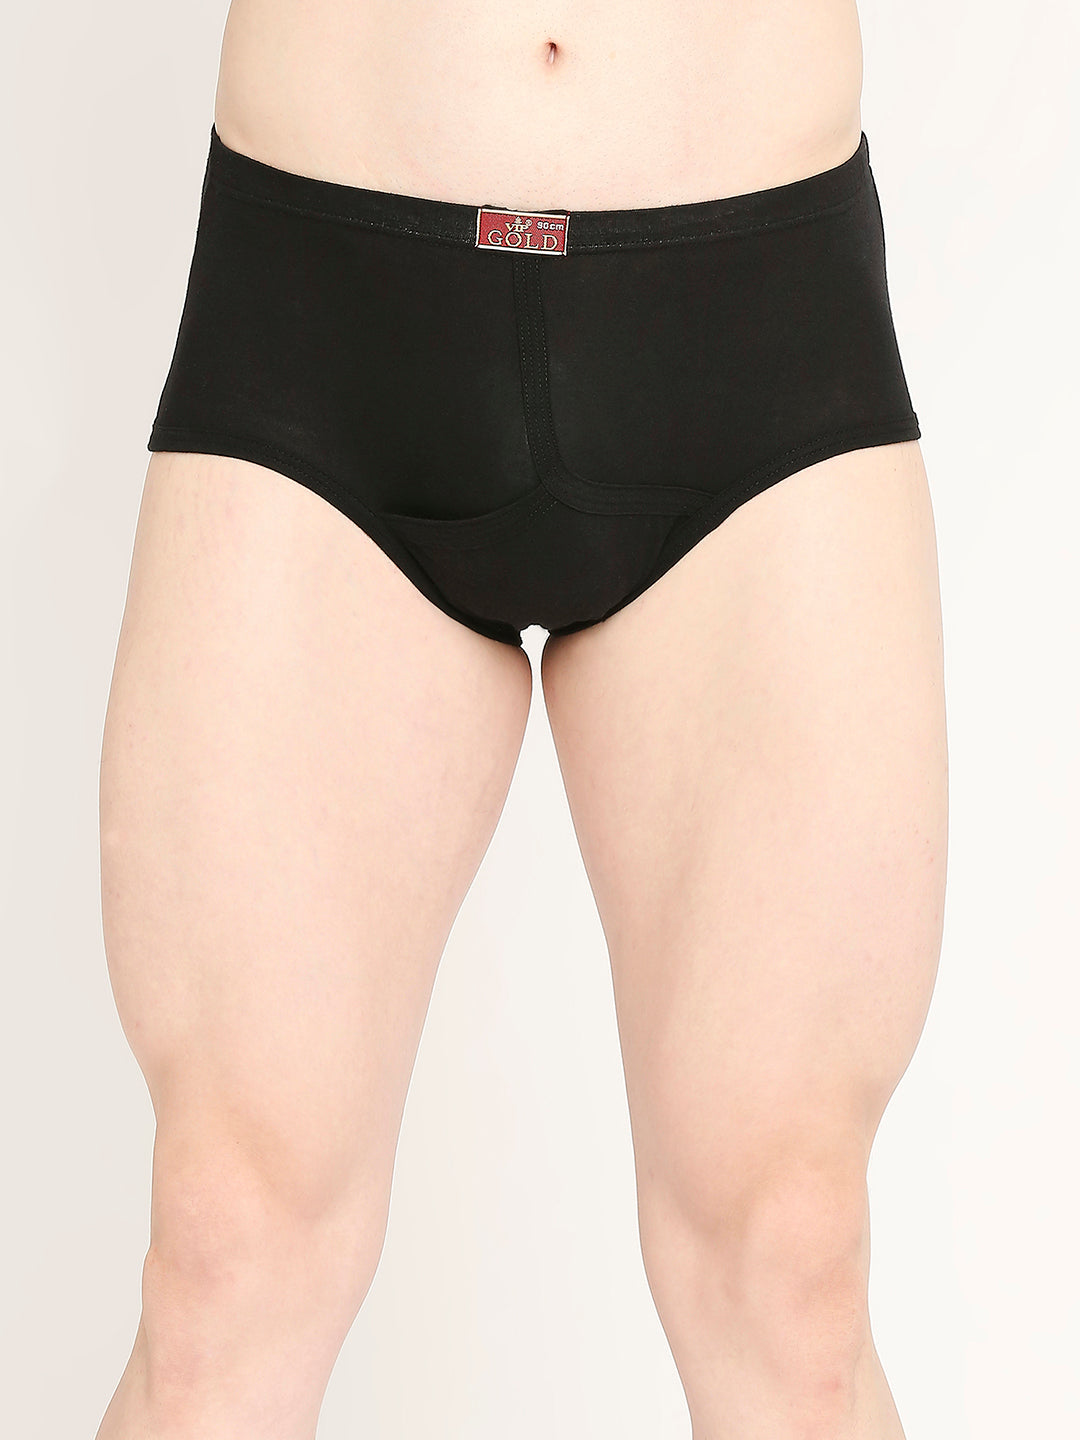 Men Underwear - Buy Innerwear for Men Online at Best Price